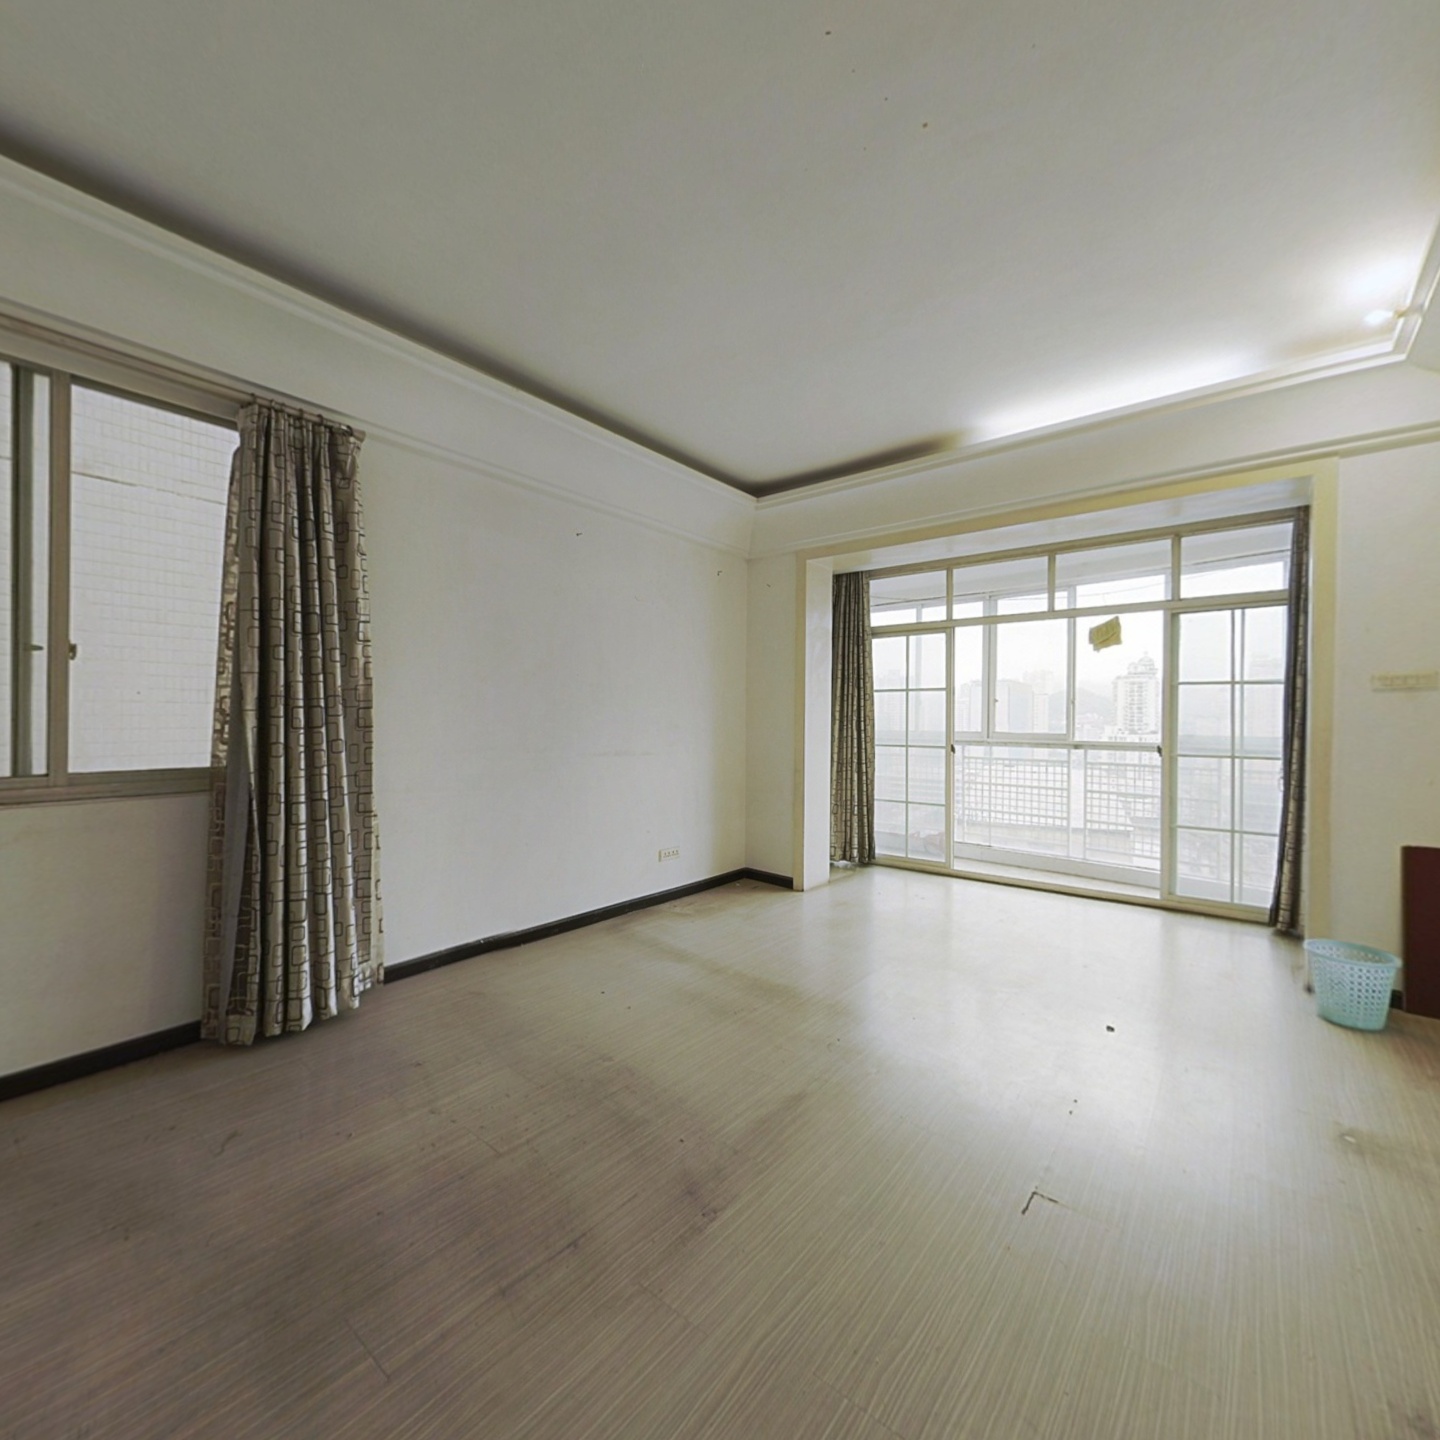 腾达广场19层76平一室一厅简单装修出售